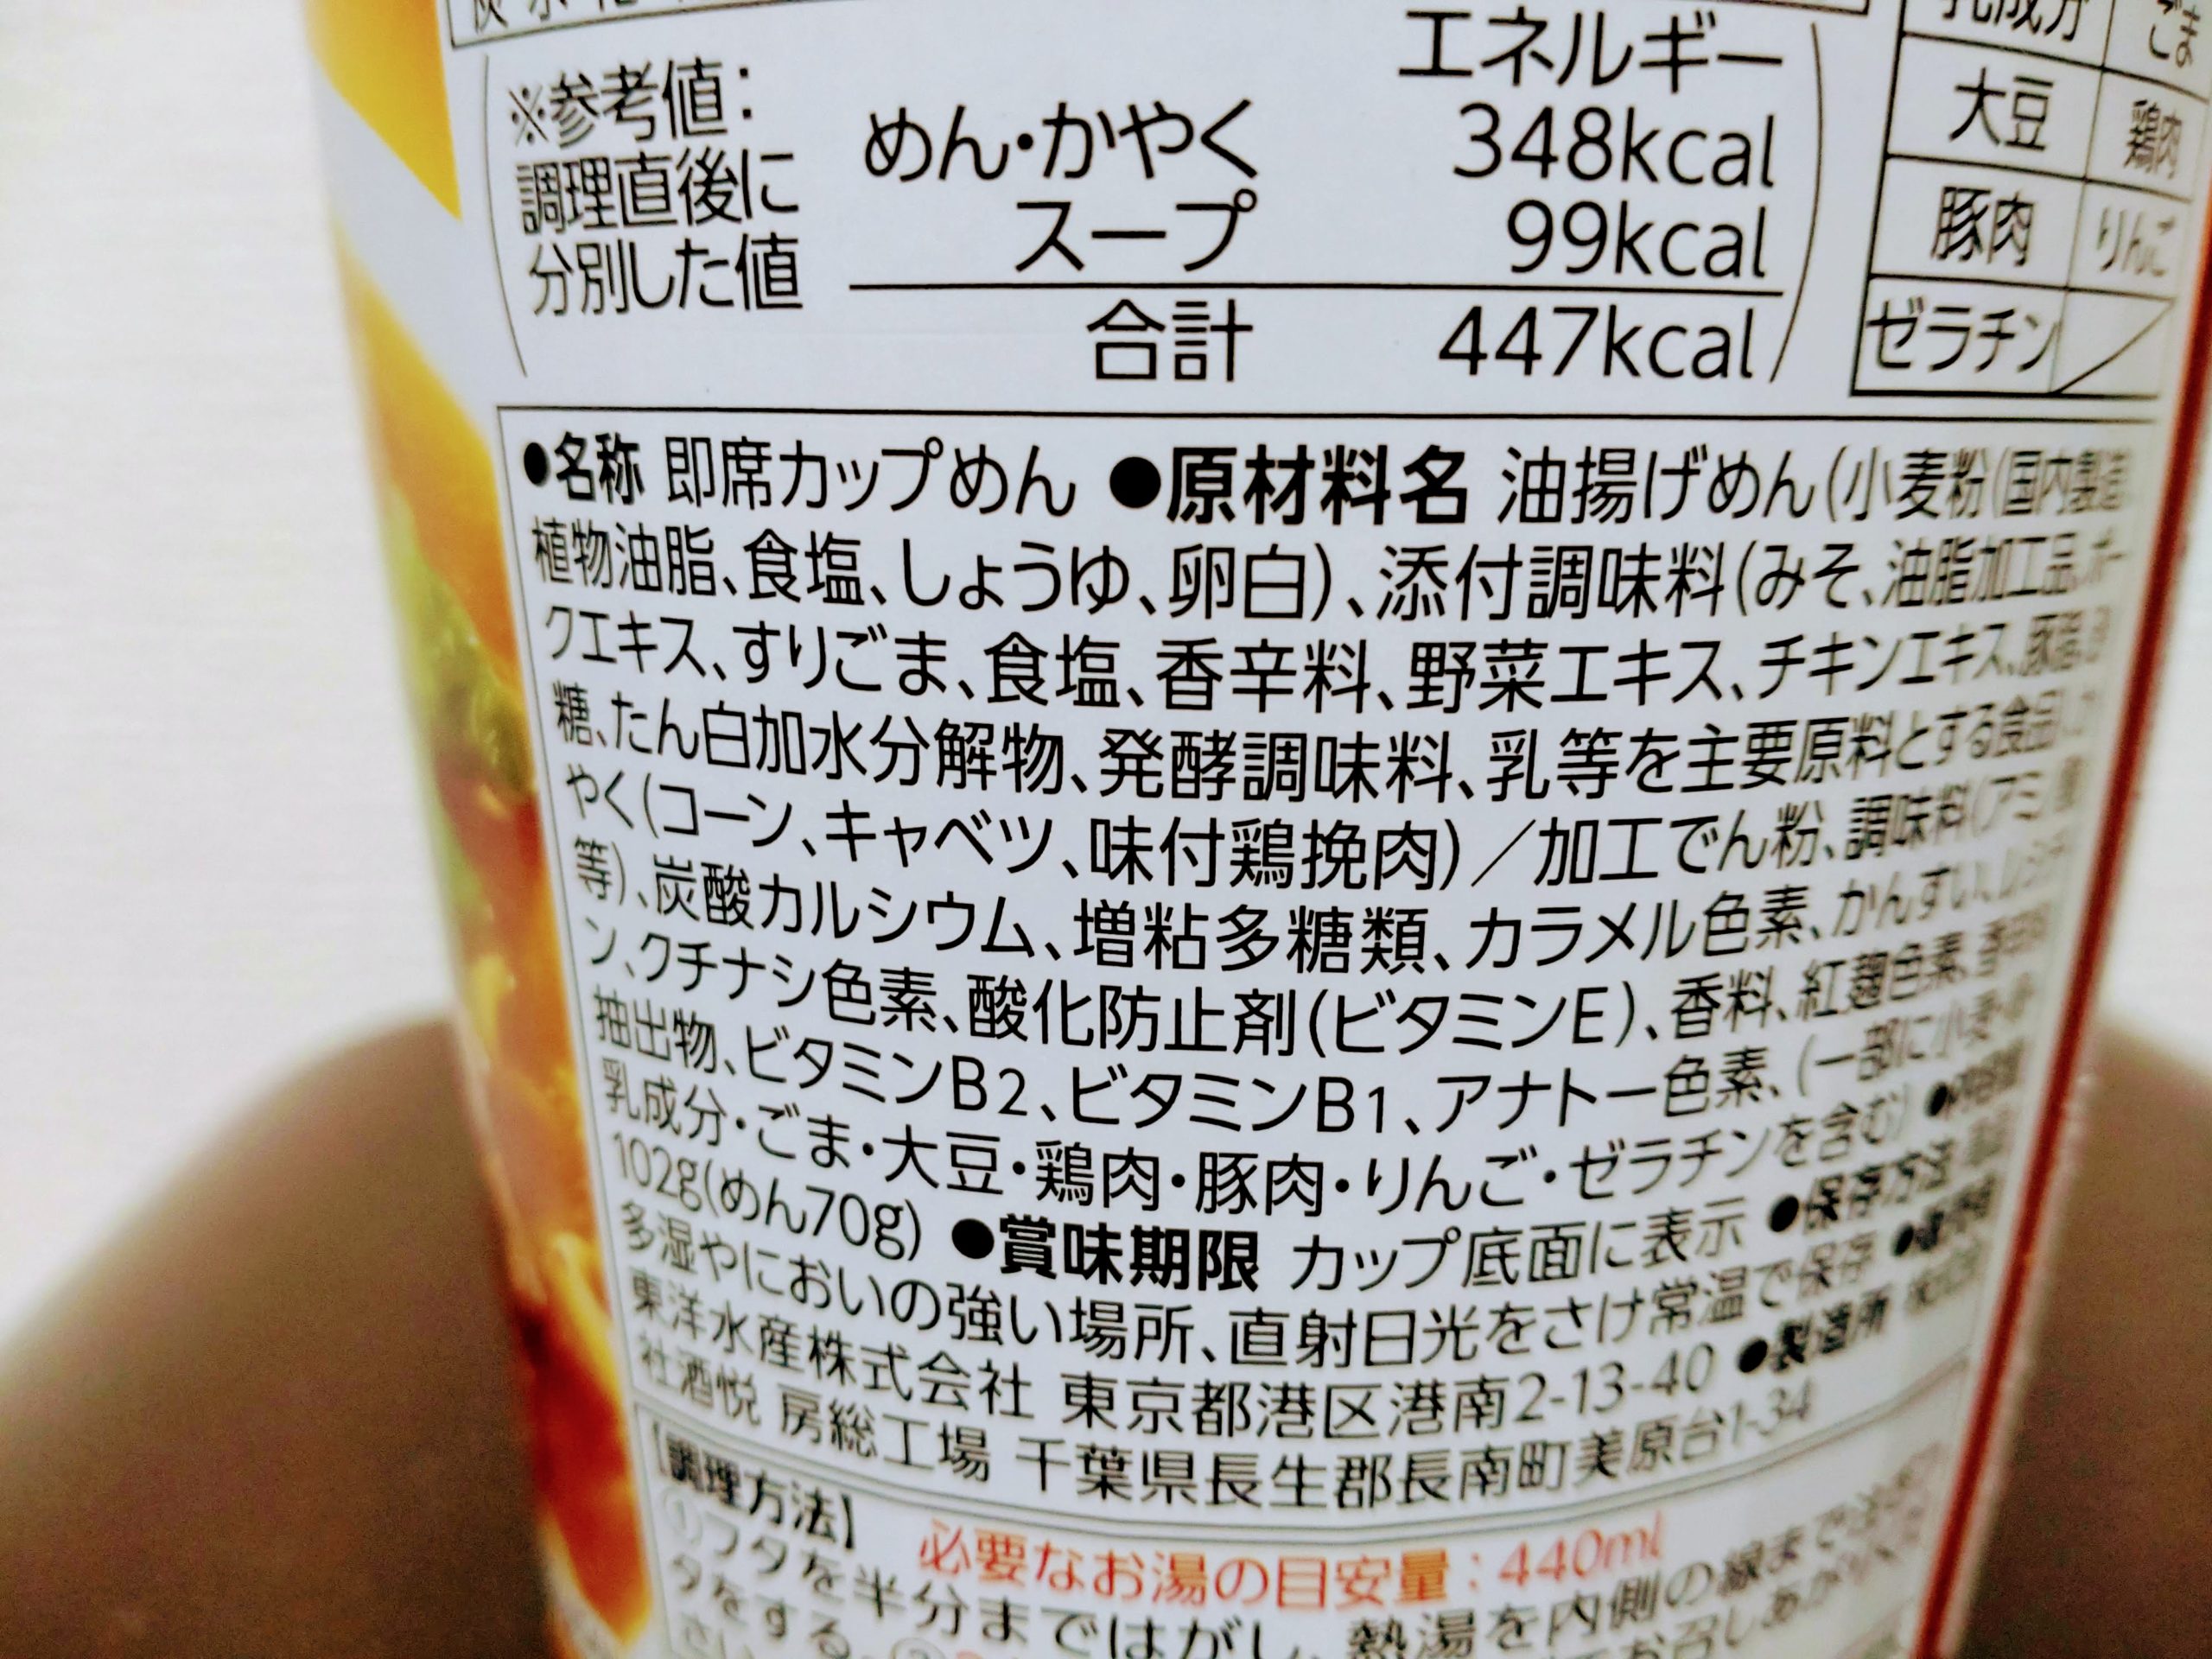 マルちゃん 味噌バター味ラーメンの食品表示